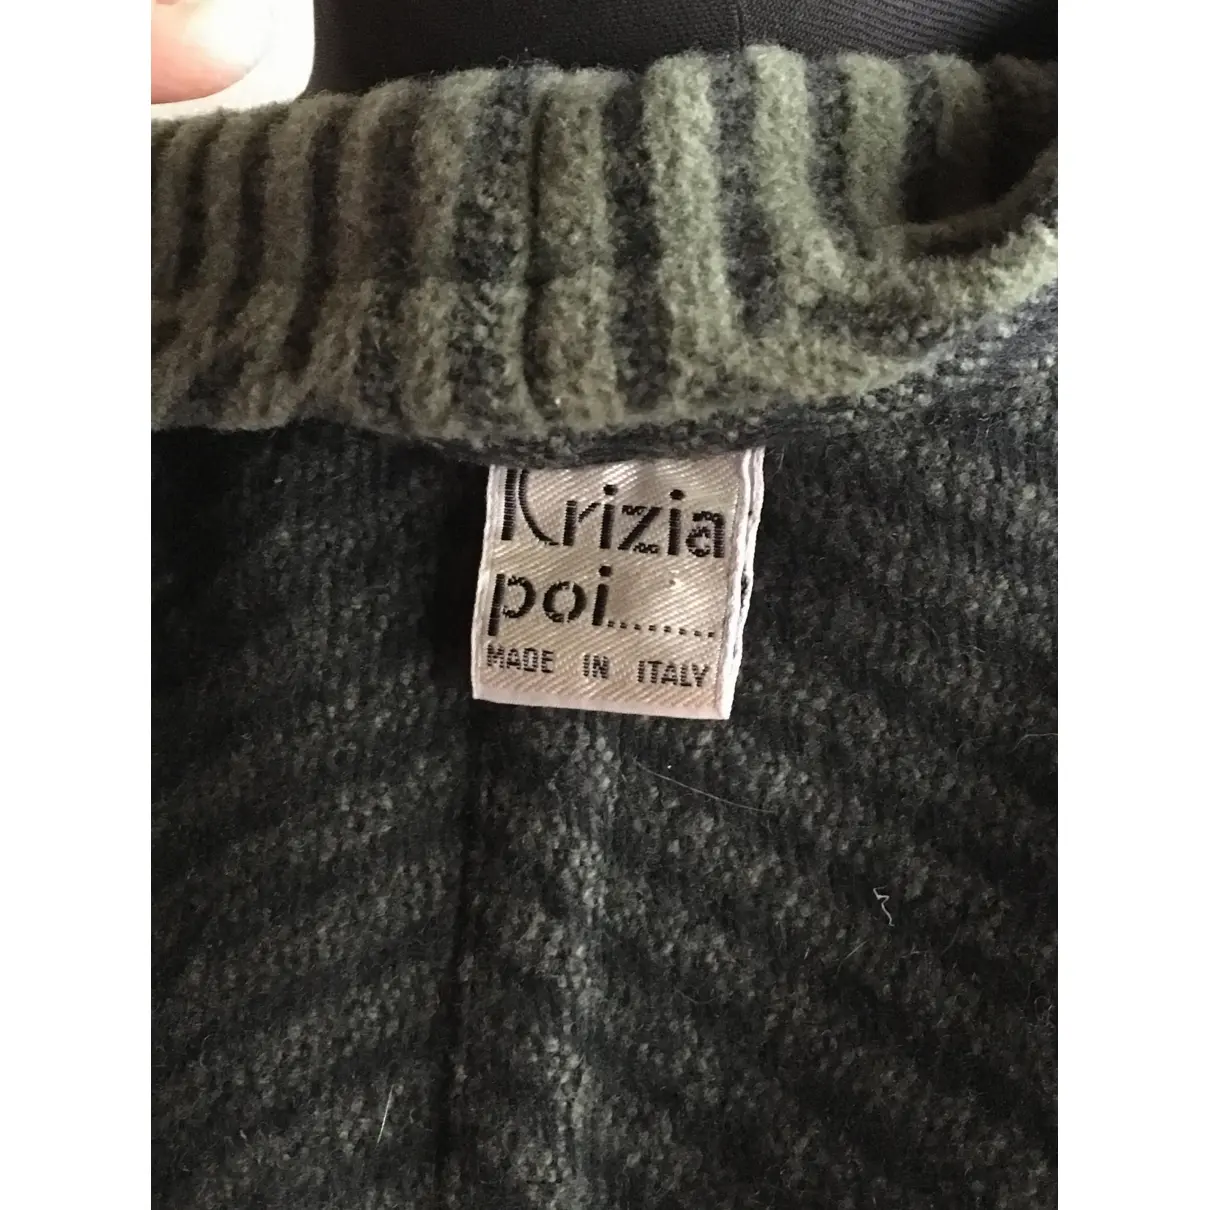 Buy Krizia Wool coat online - Vintage